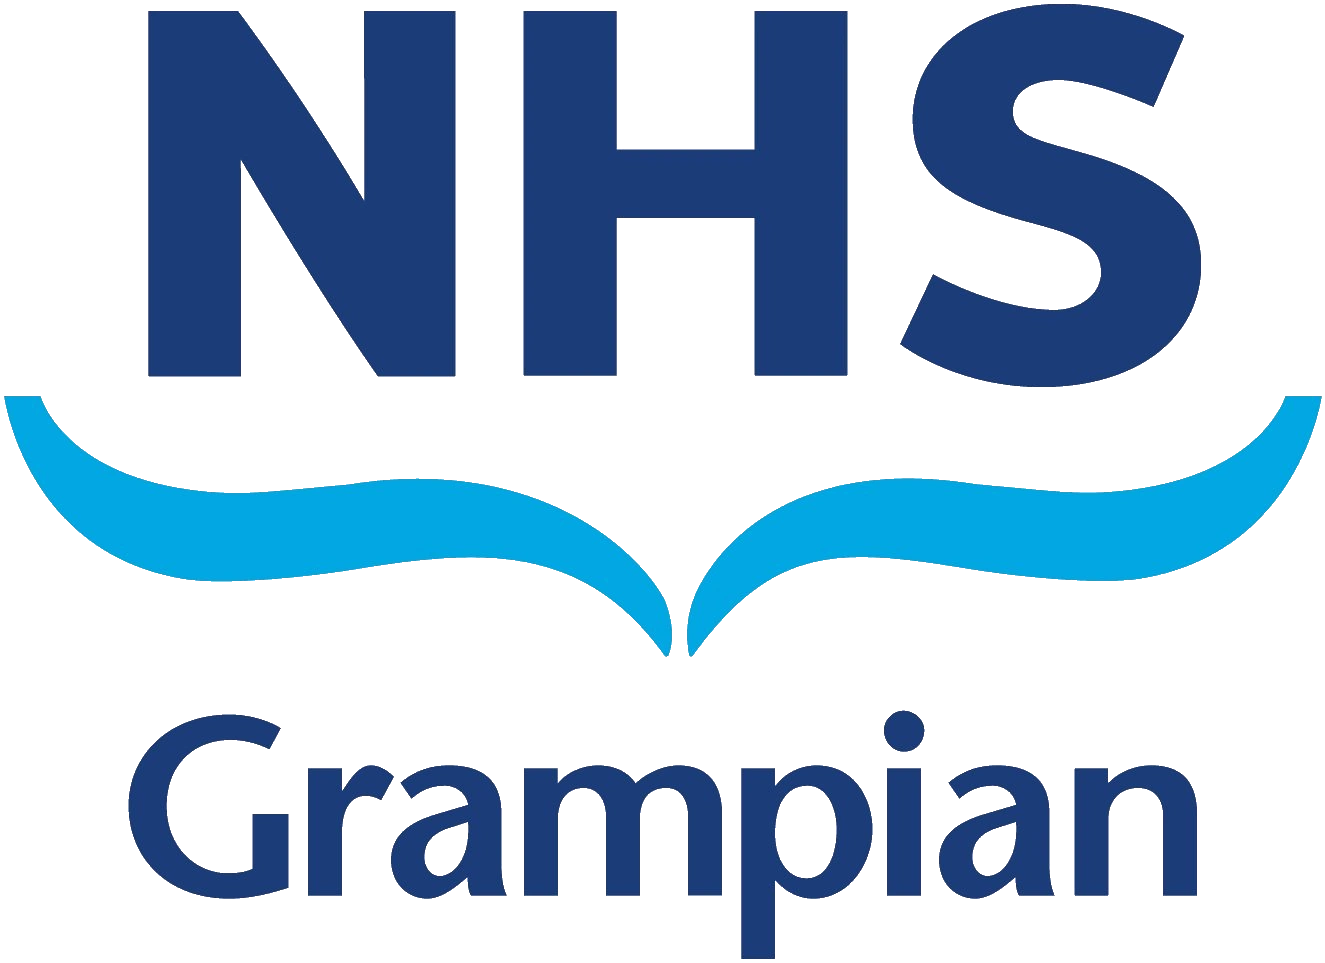 NHS Grampian logo